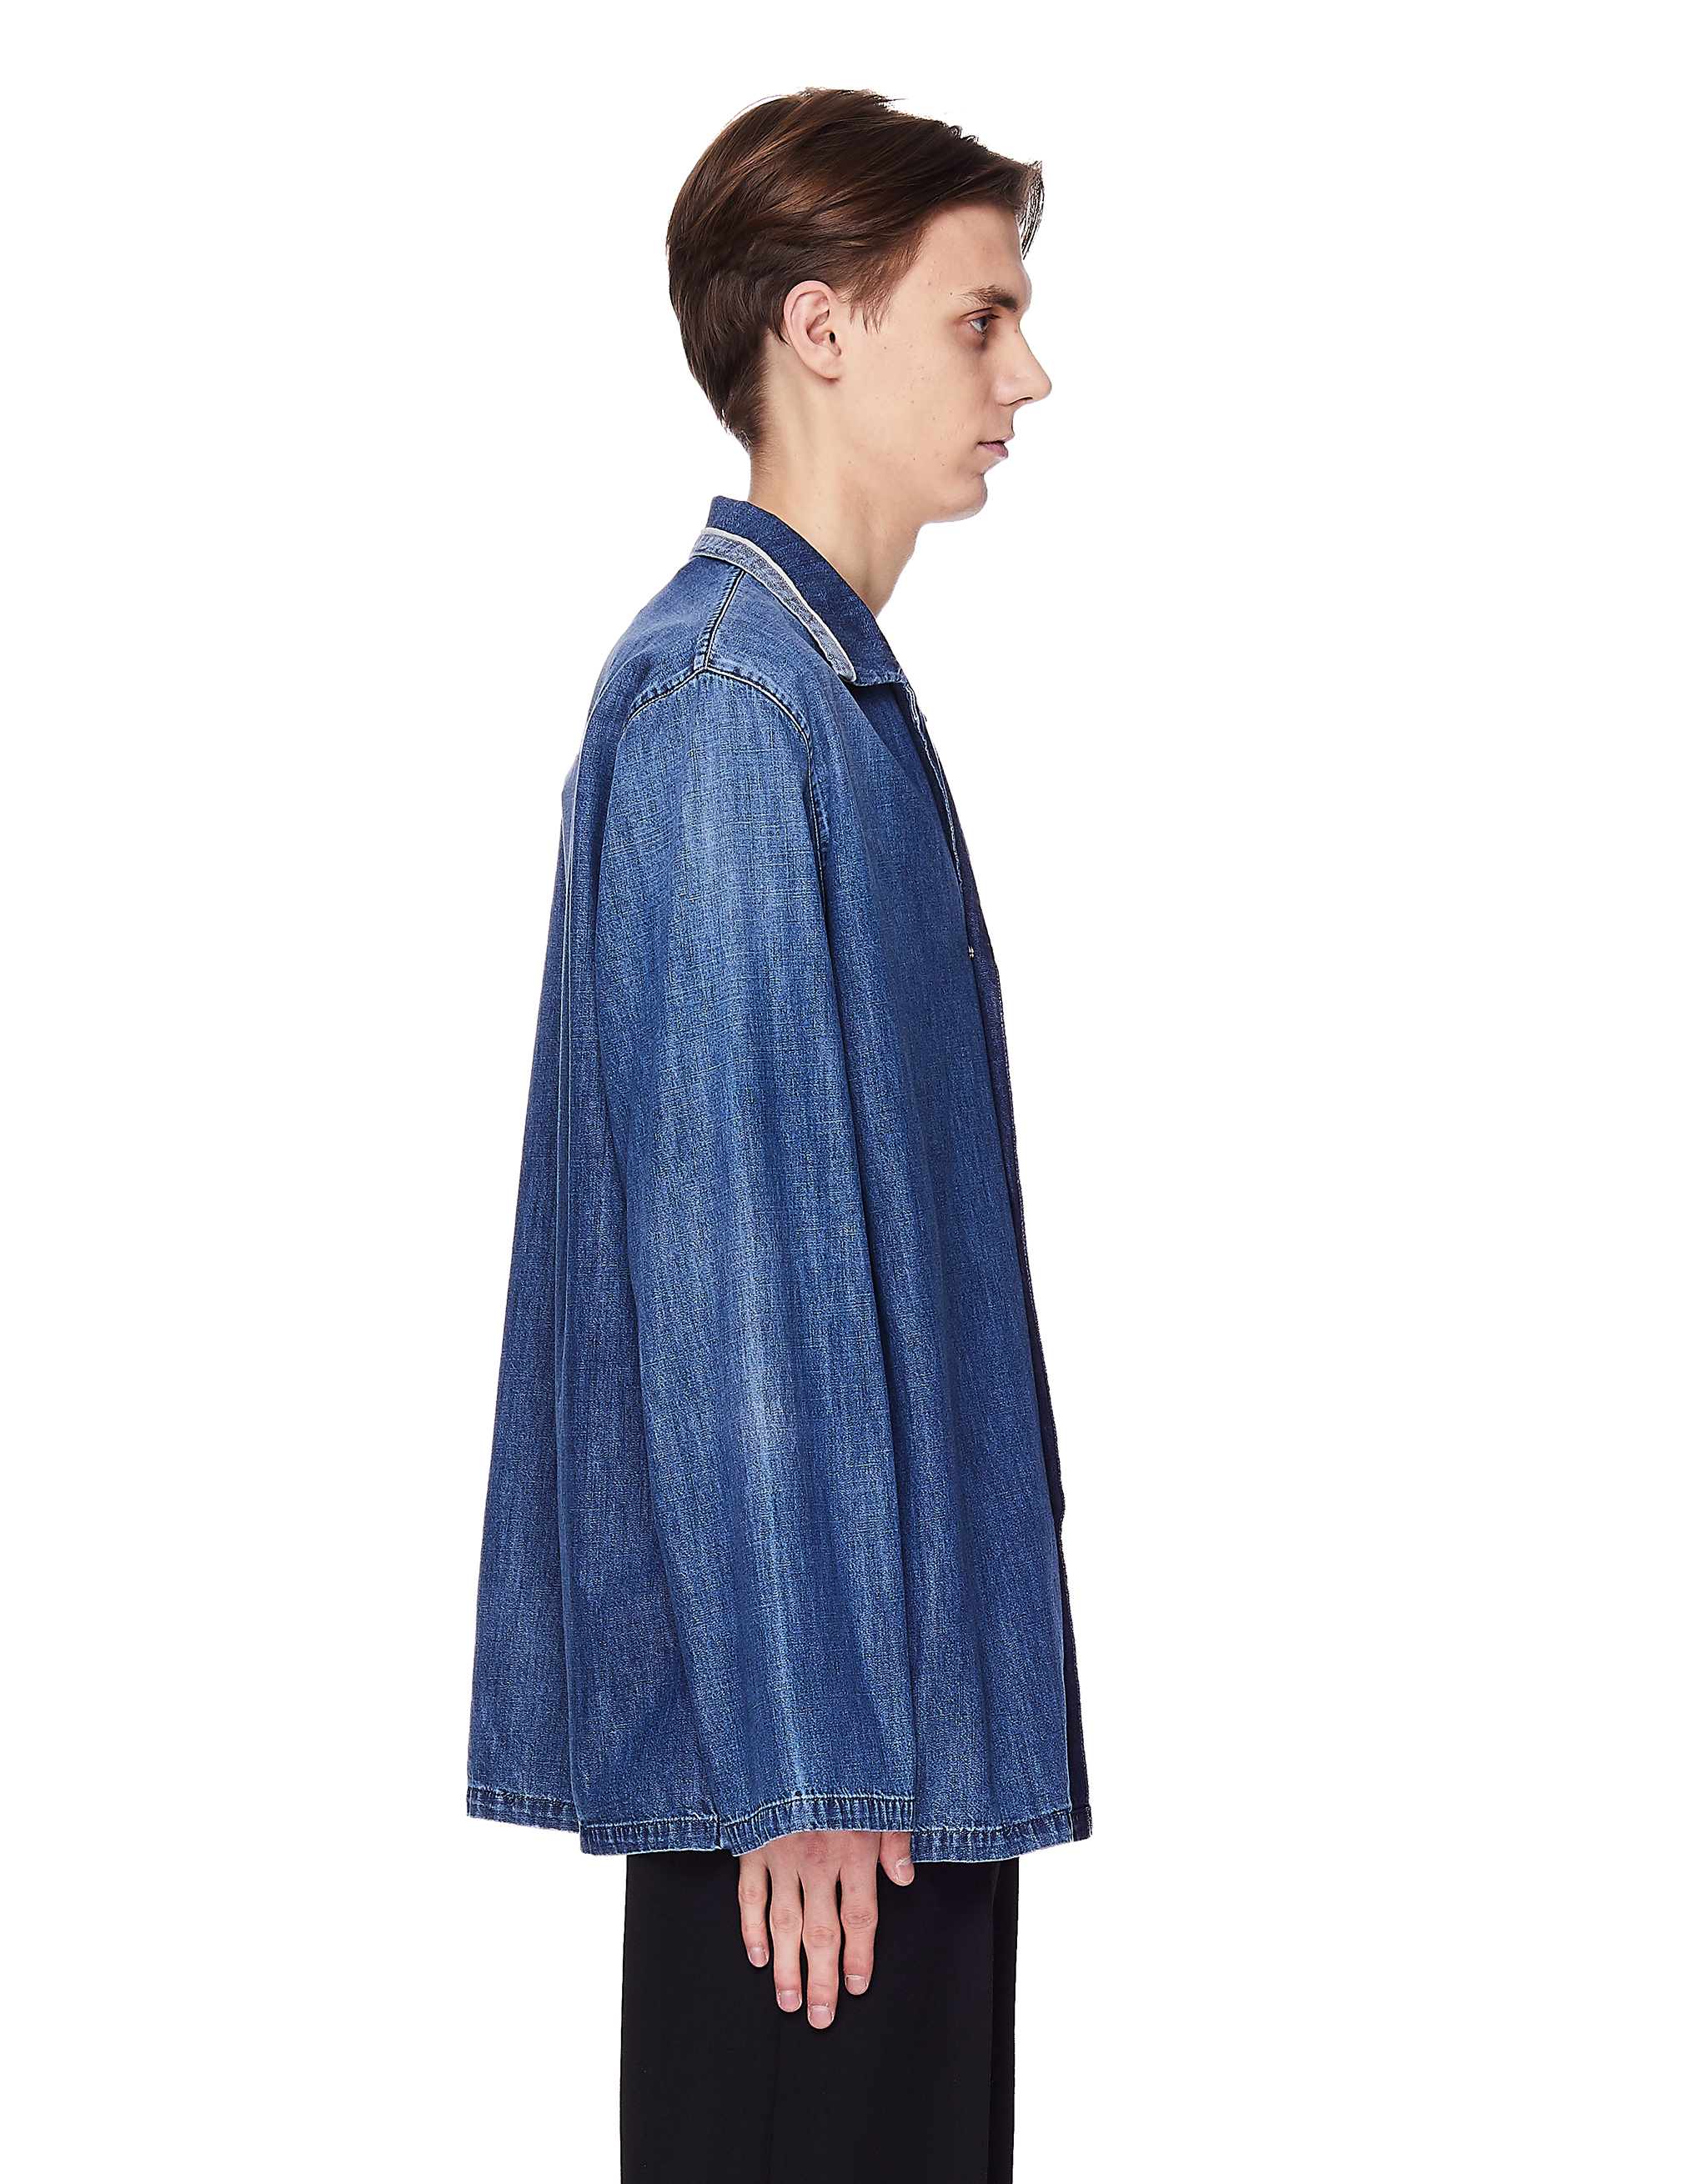 Голубая рубашка из тонкого денима - Maison Margiela S50AM0452/S30514/468 Фото 2